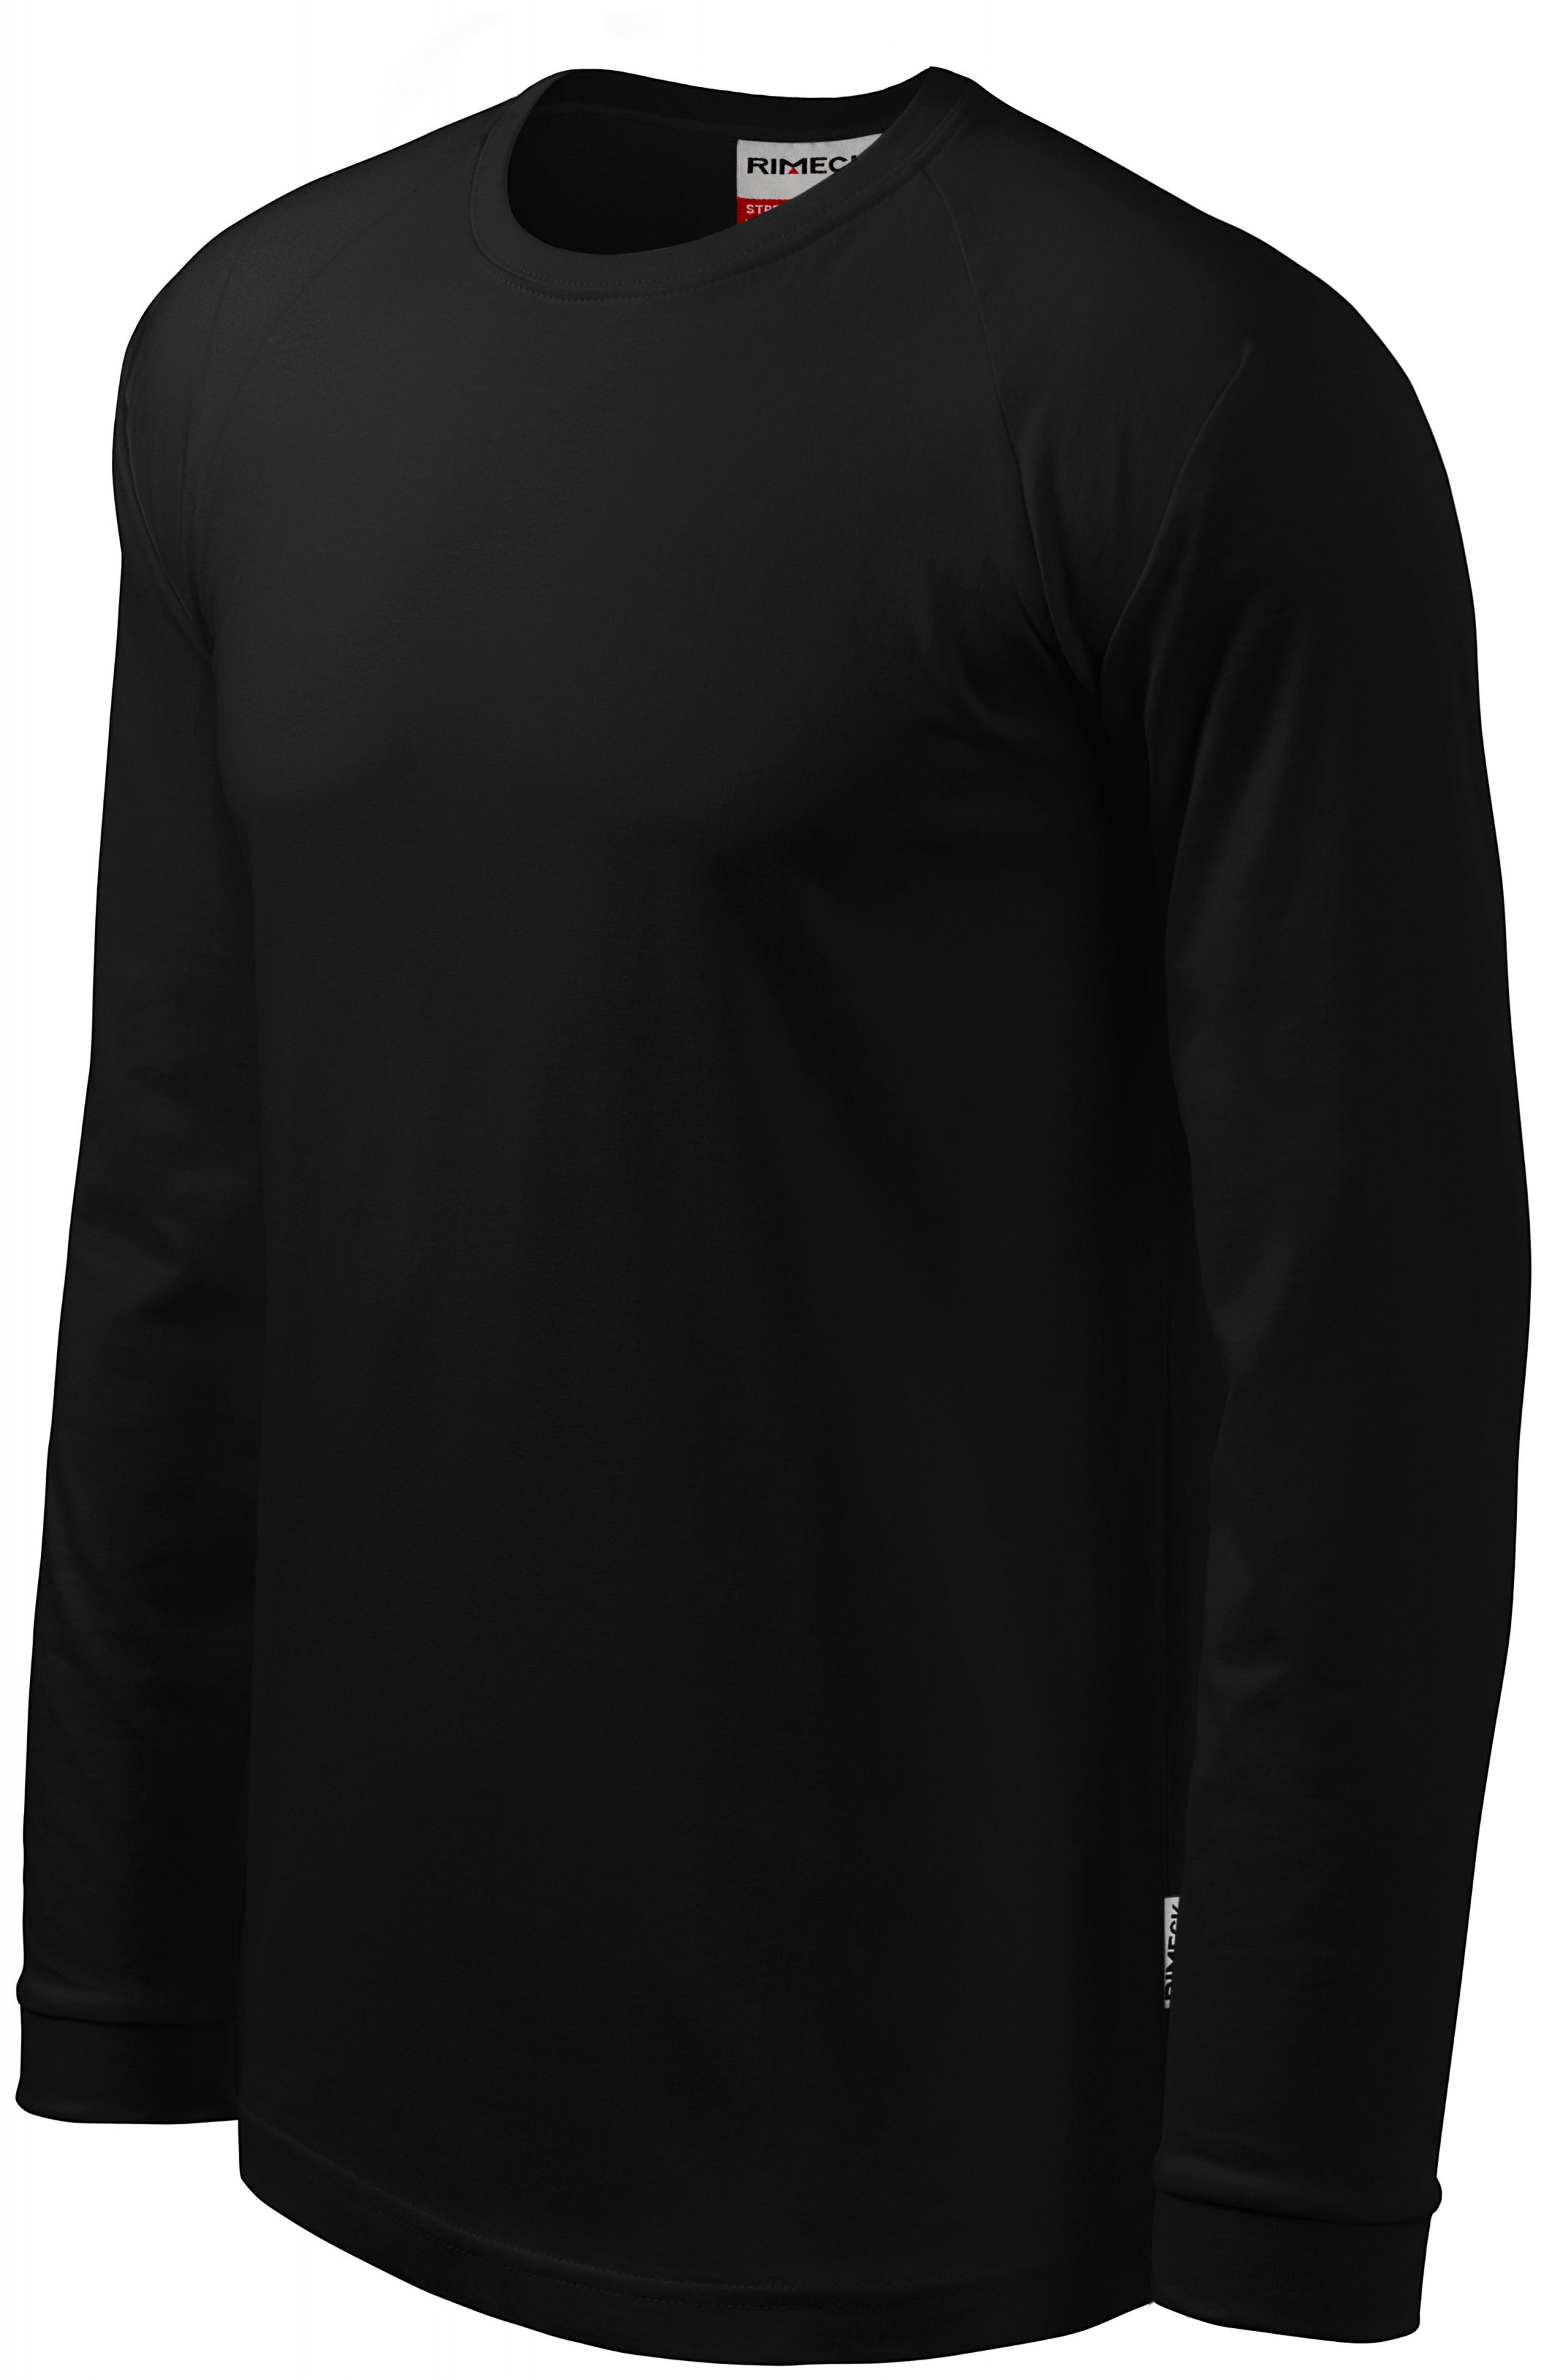 Pánske tričko s dlhým rukávom, kontrastné, čierna, 4XL